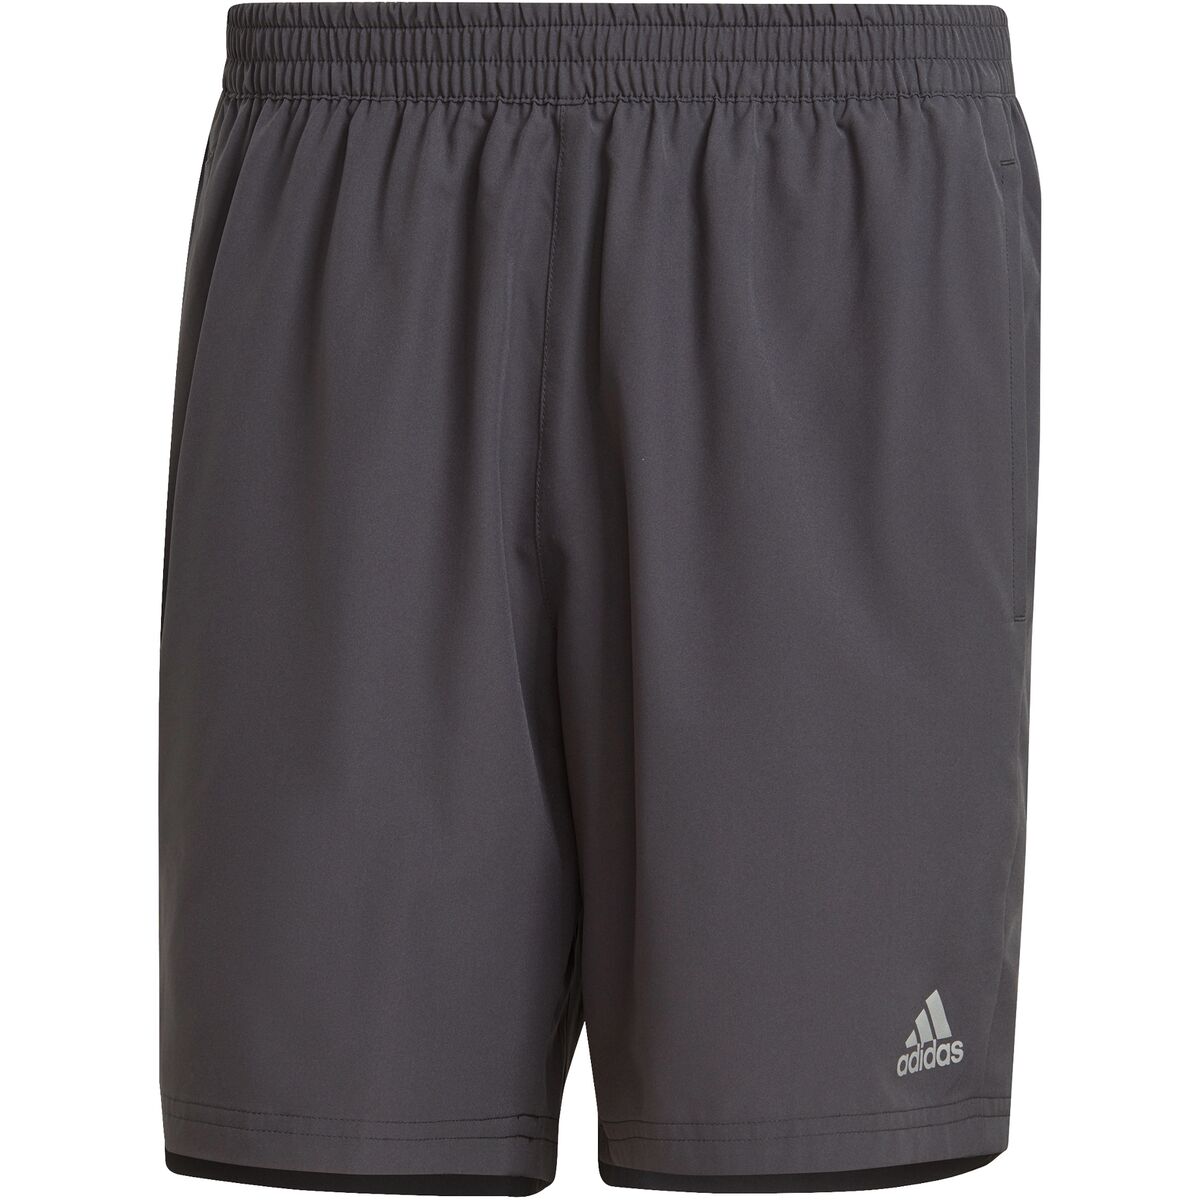 Adidas Run It 7in Shorts - Men's - Clothing